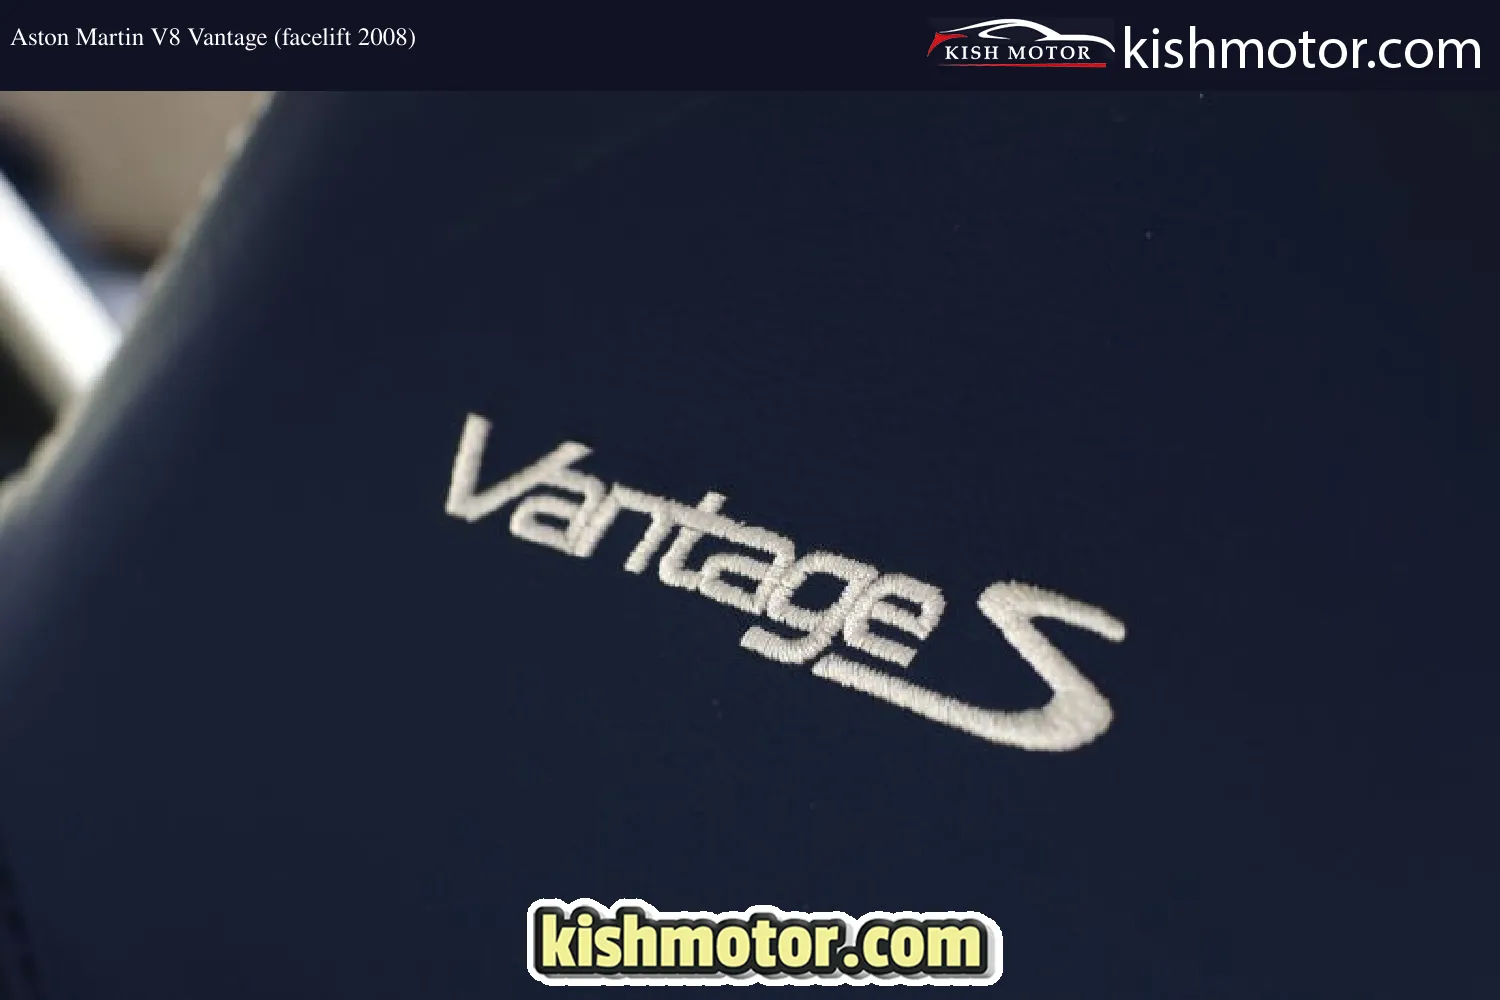 Aston Martin V8 Vantage (facelift 2008)